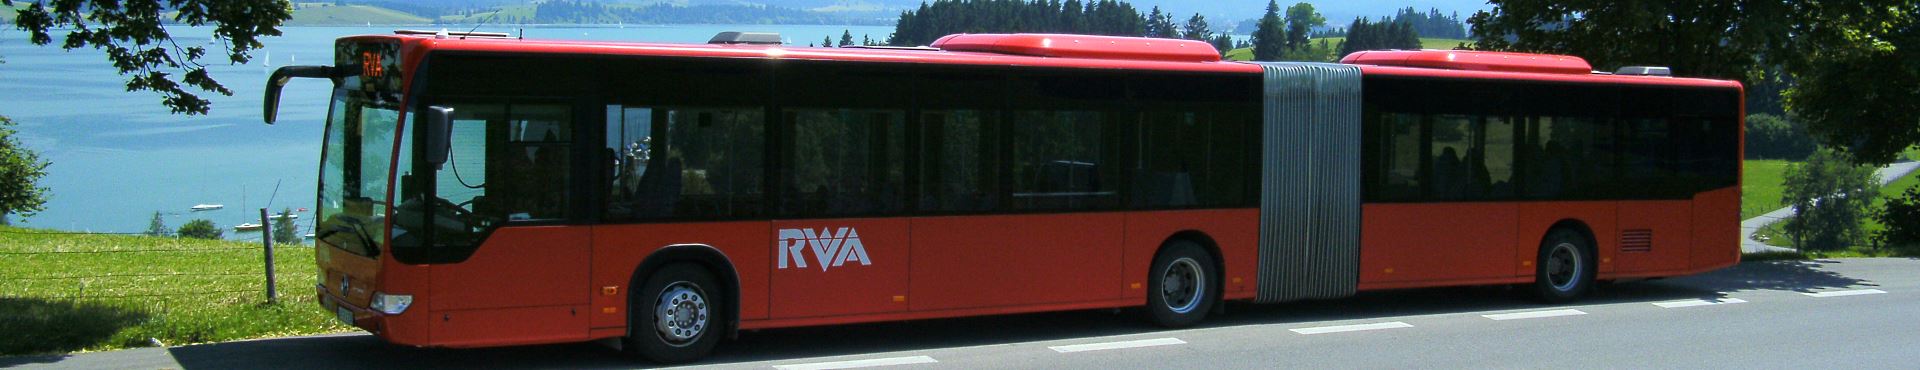 Allgäumobil RVA-Bus